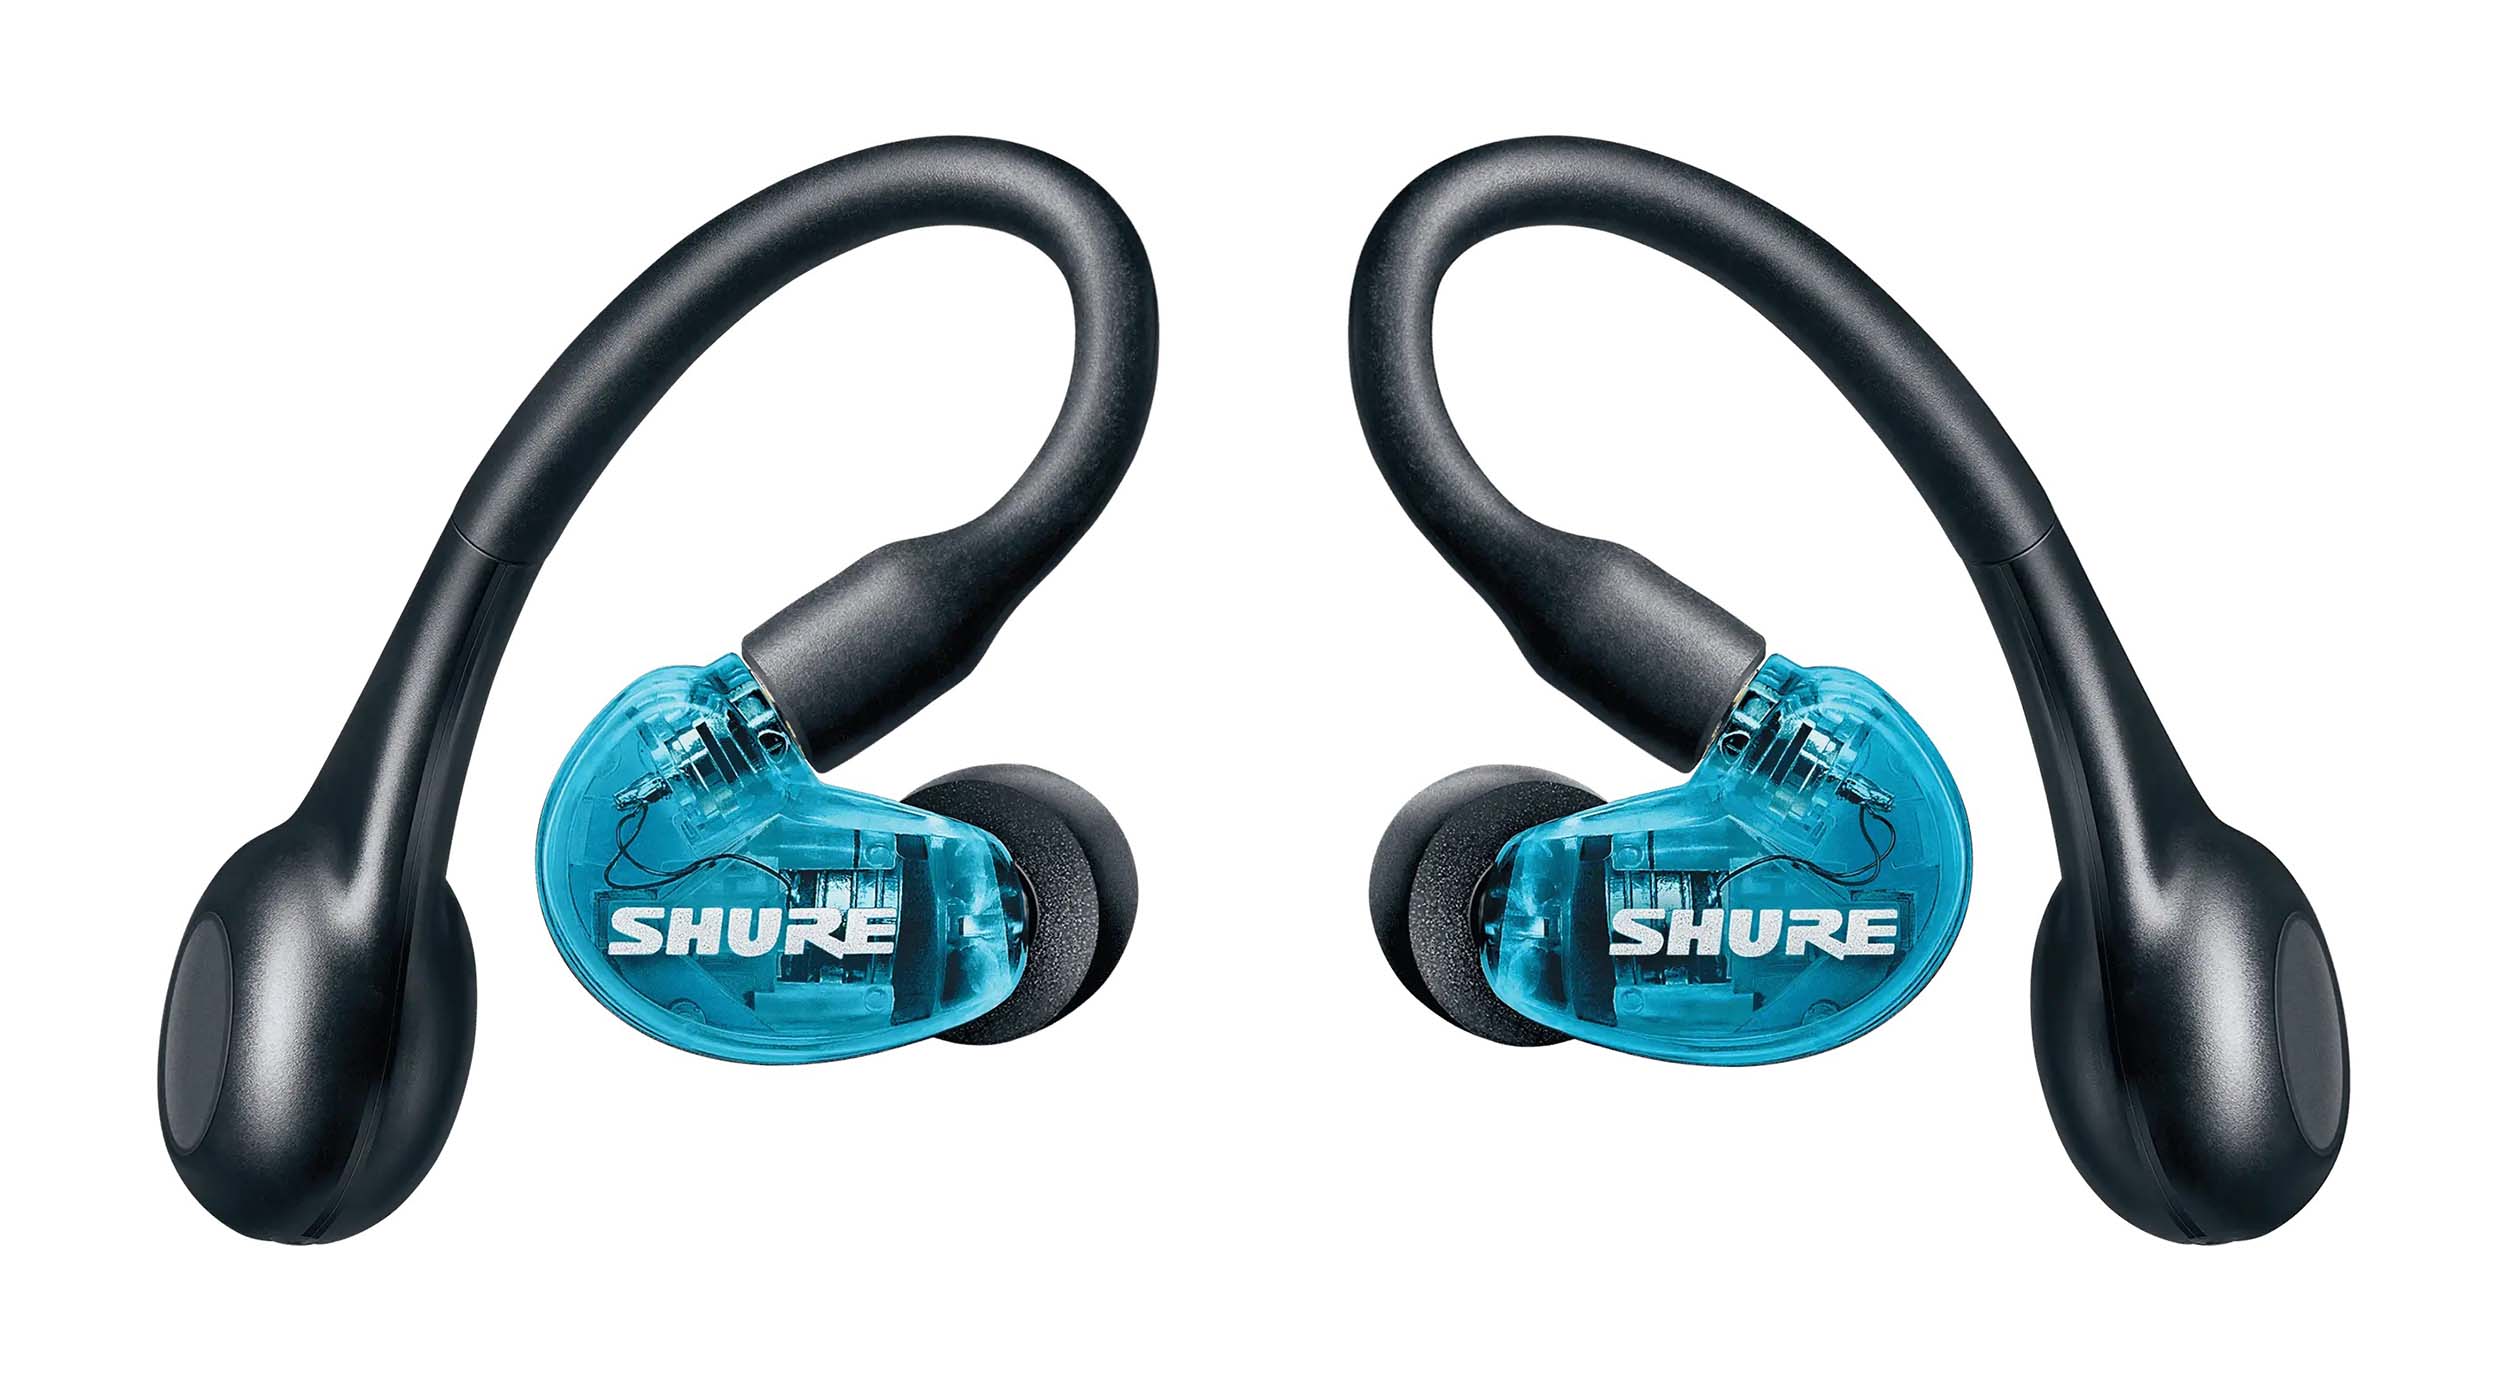 Shure SE21DYBL+TW2, Gen 2 True Wireless Sound Isolating Earphones - Blue by Shure